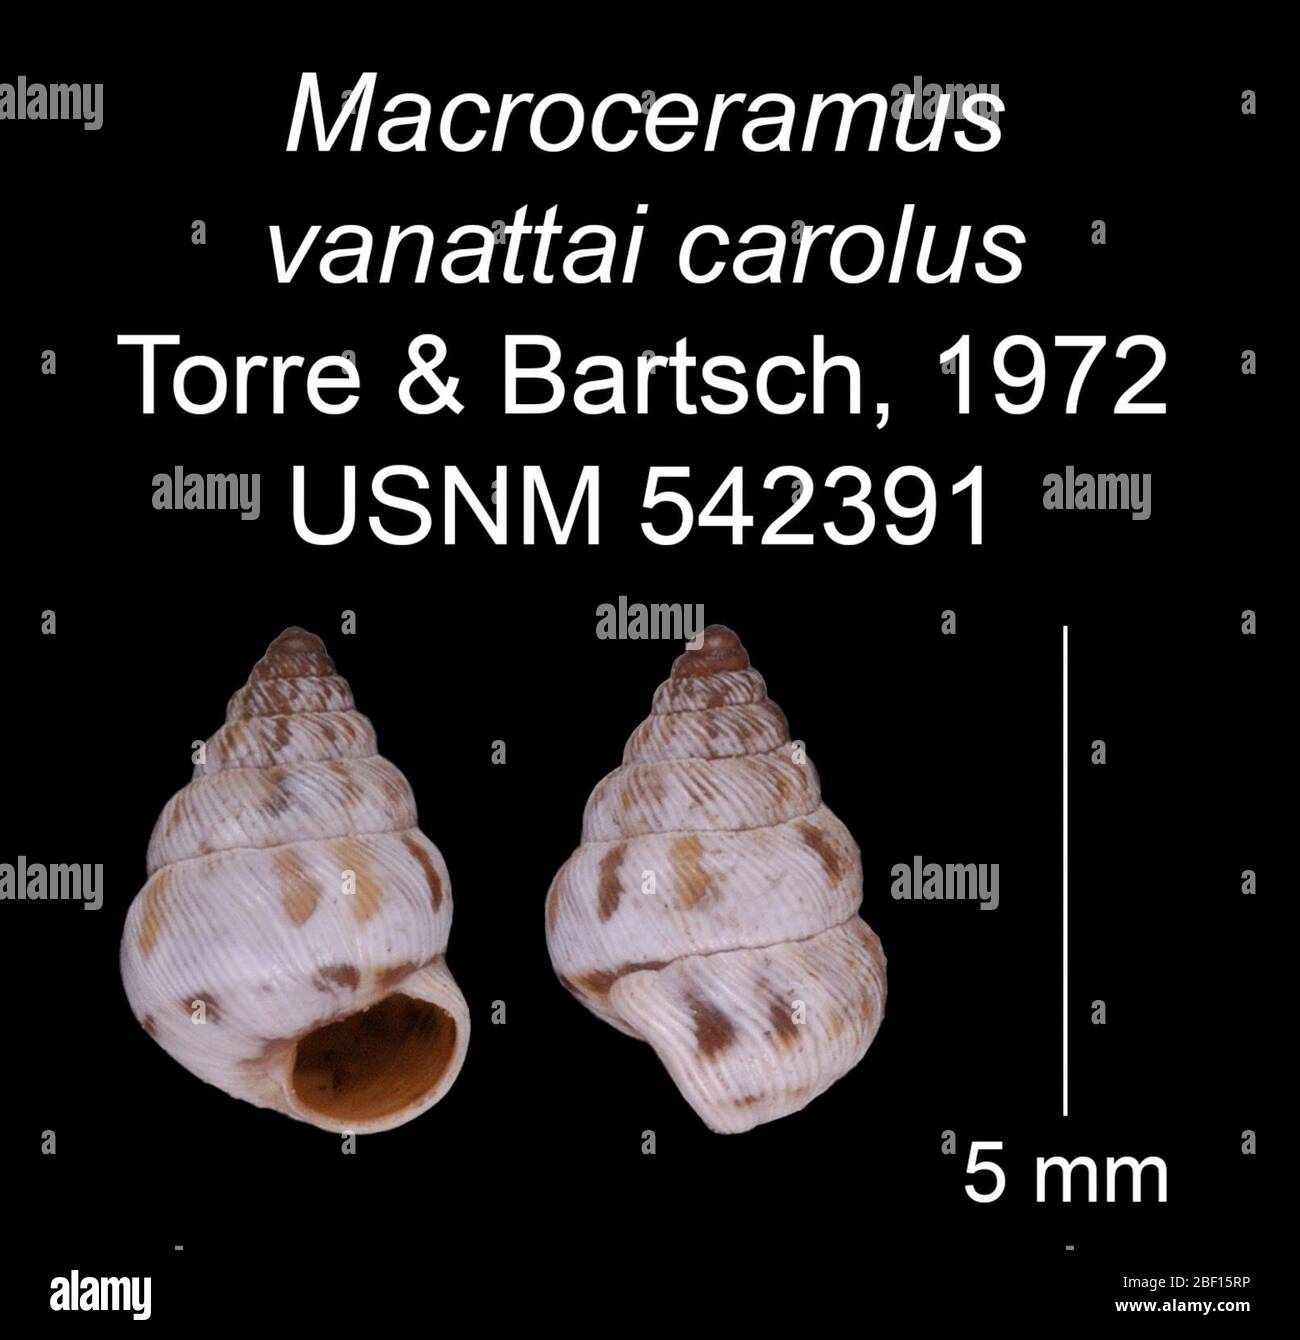 Macroceramus vanattai carolus. 20 Jan 20161 Stock Photo